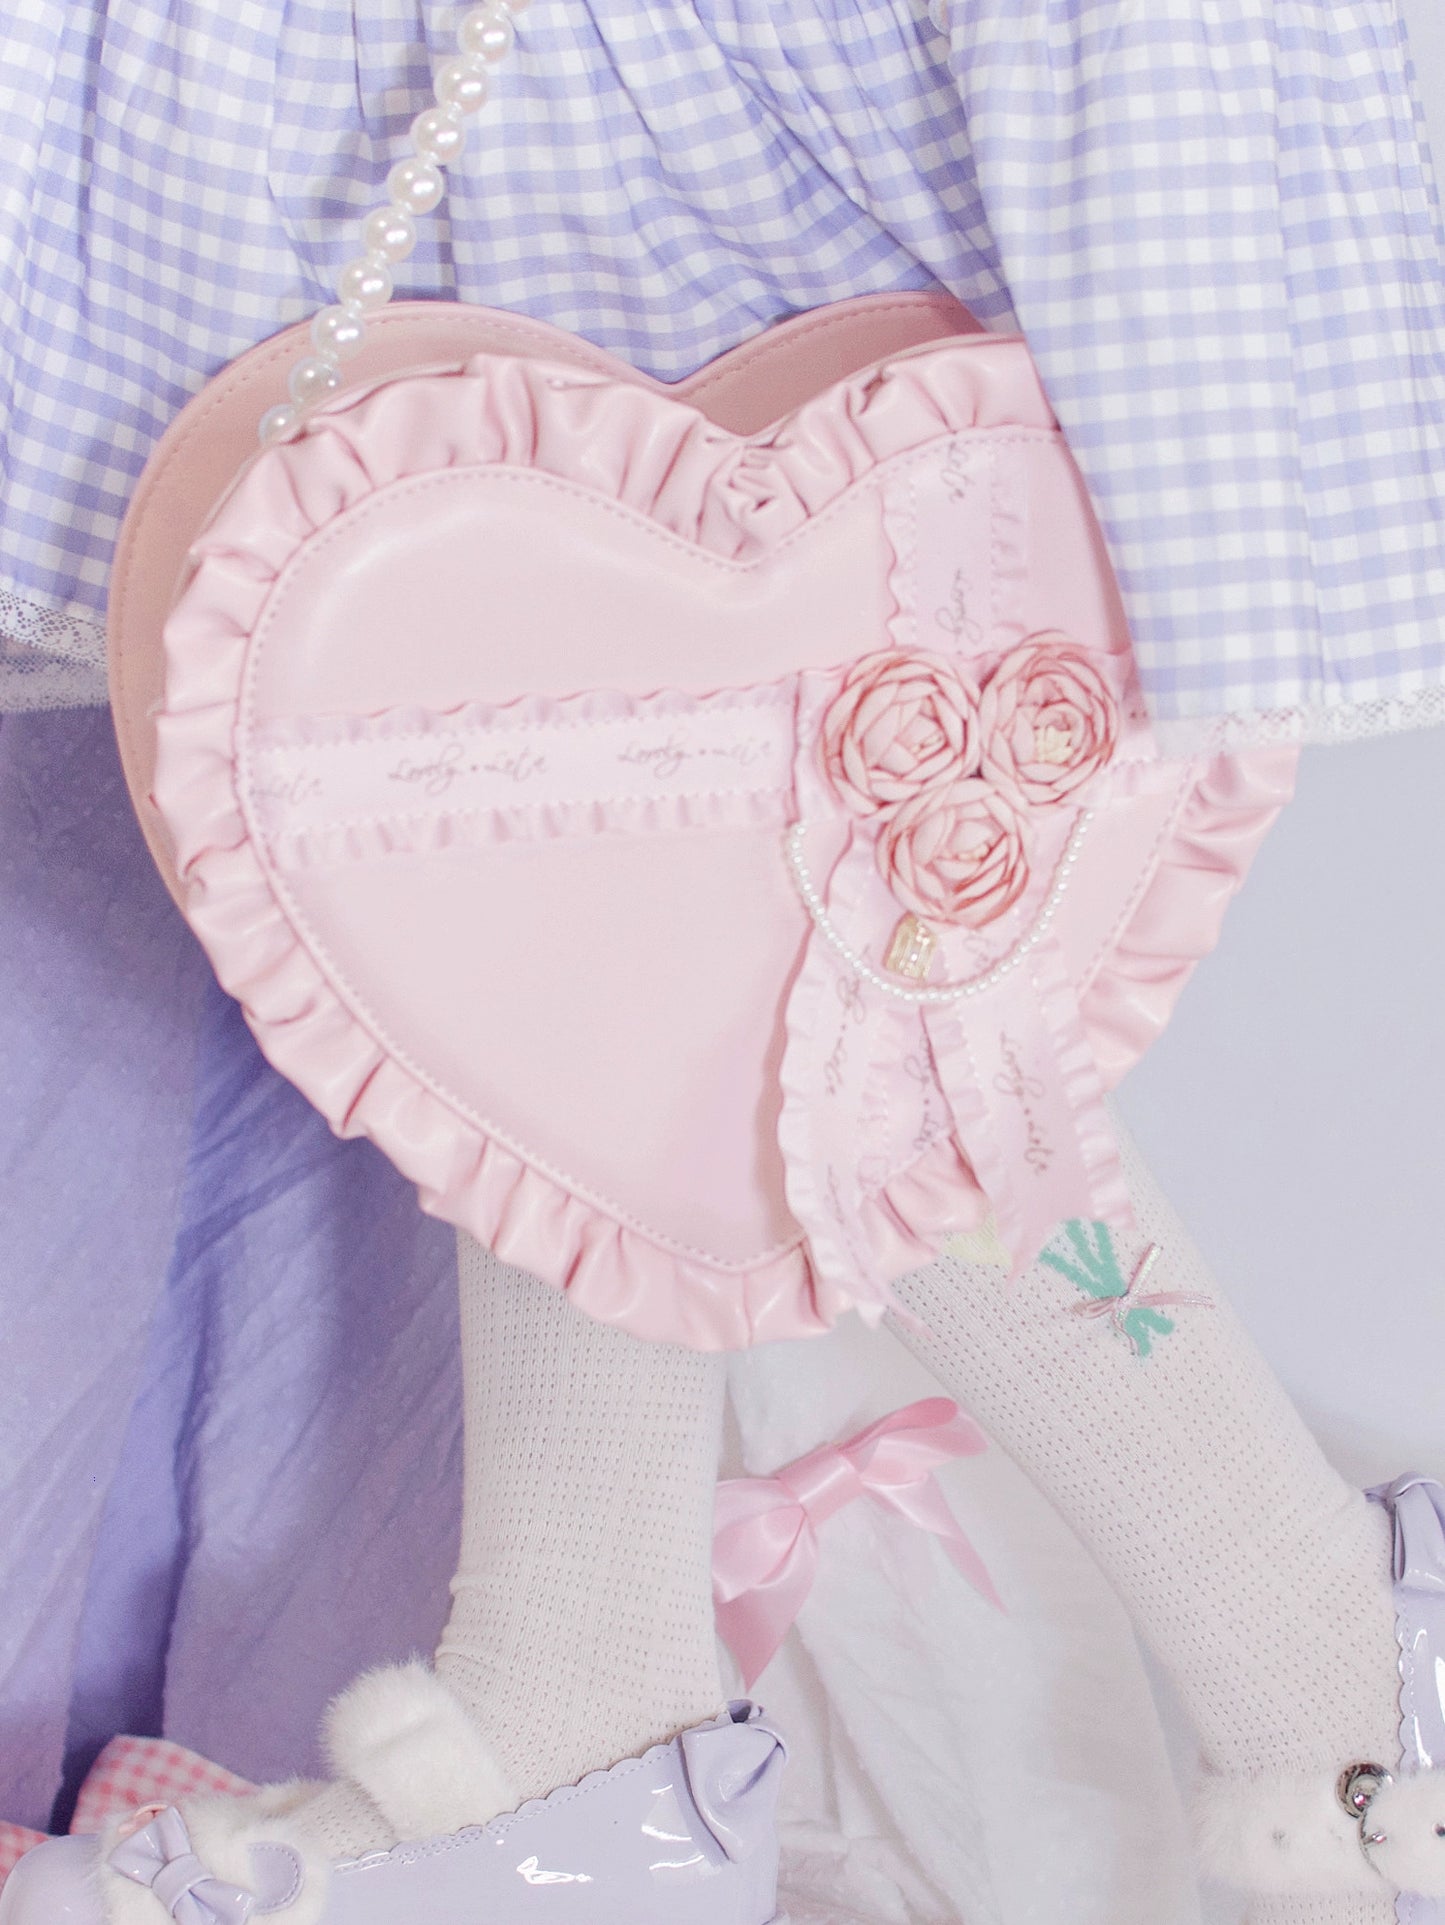 Lolita Handbag Heart Shaped Rose Crossbody Bag 35776:542030